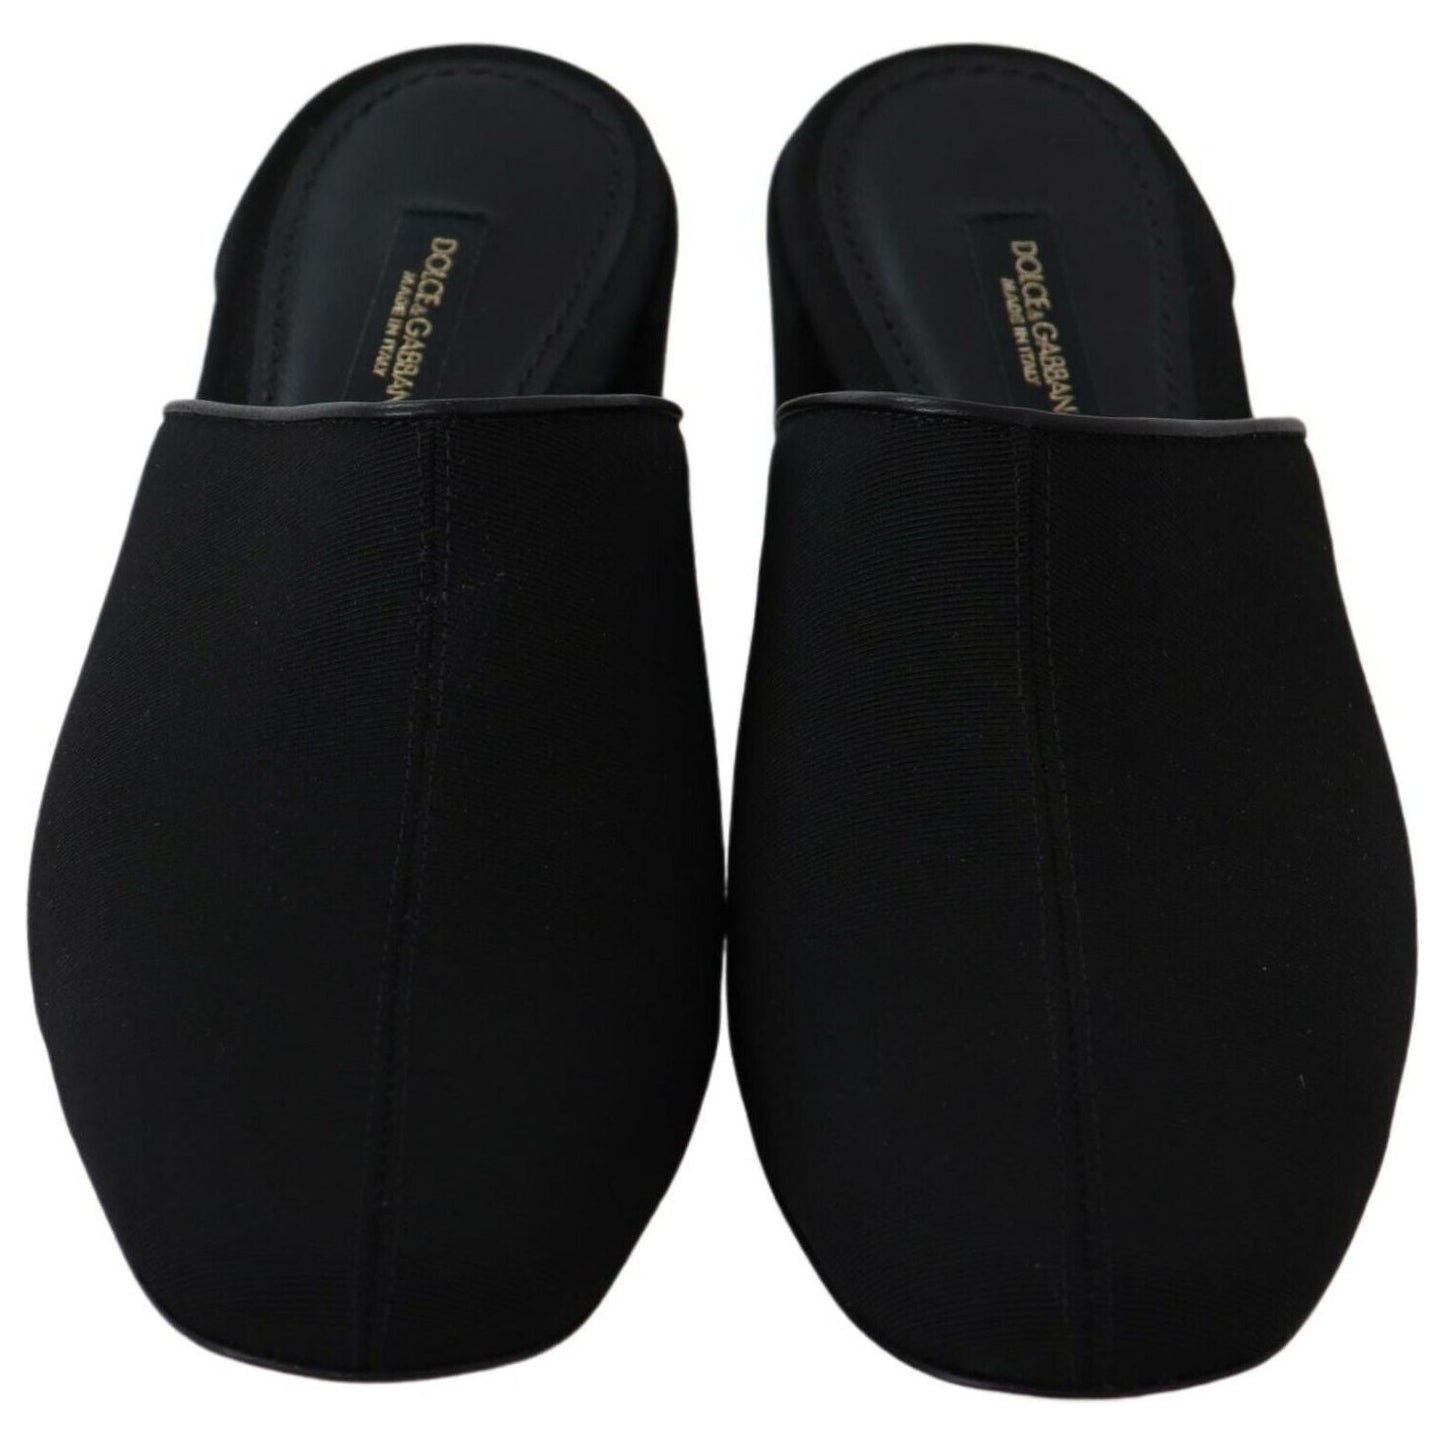 Dolce & Gabbana Chic Black Grosgrain Slide Sandals black-grosgrain-slides-sandals-women-shoes WOMAN SANDALS s-l1600-2022-09-05T164613.215-9c9ab0e7-255.jpg